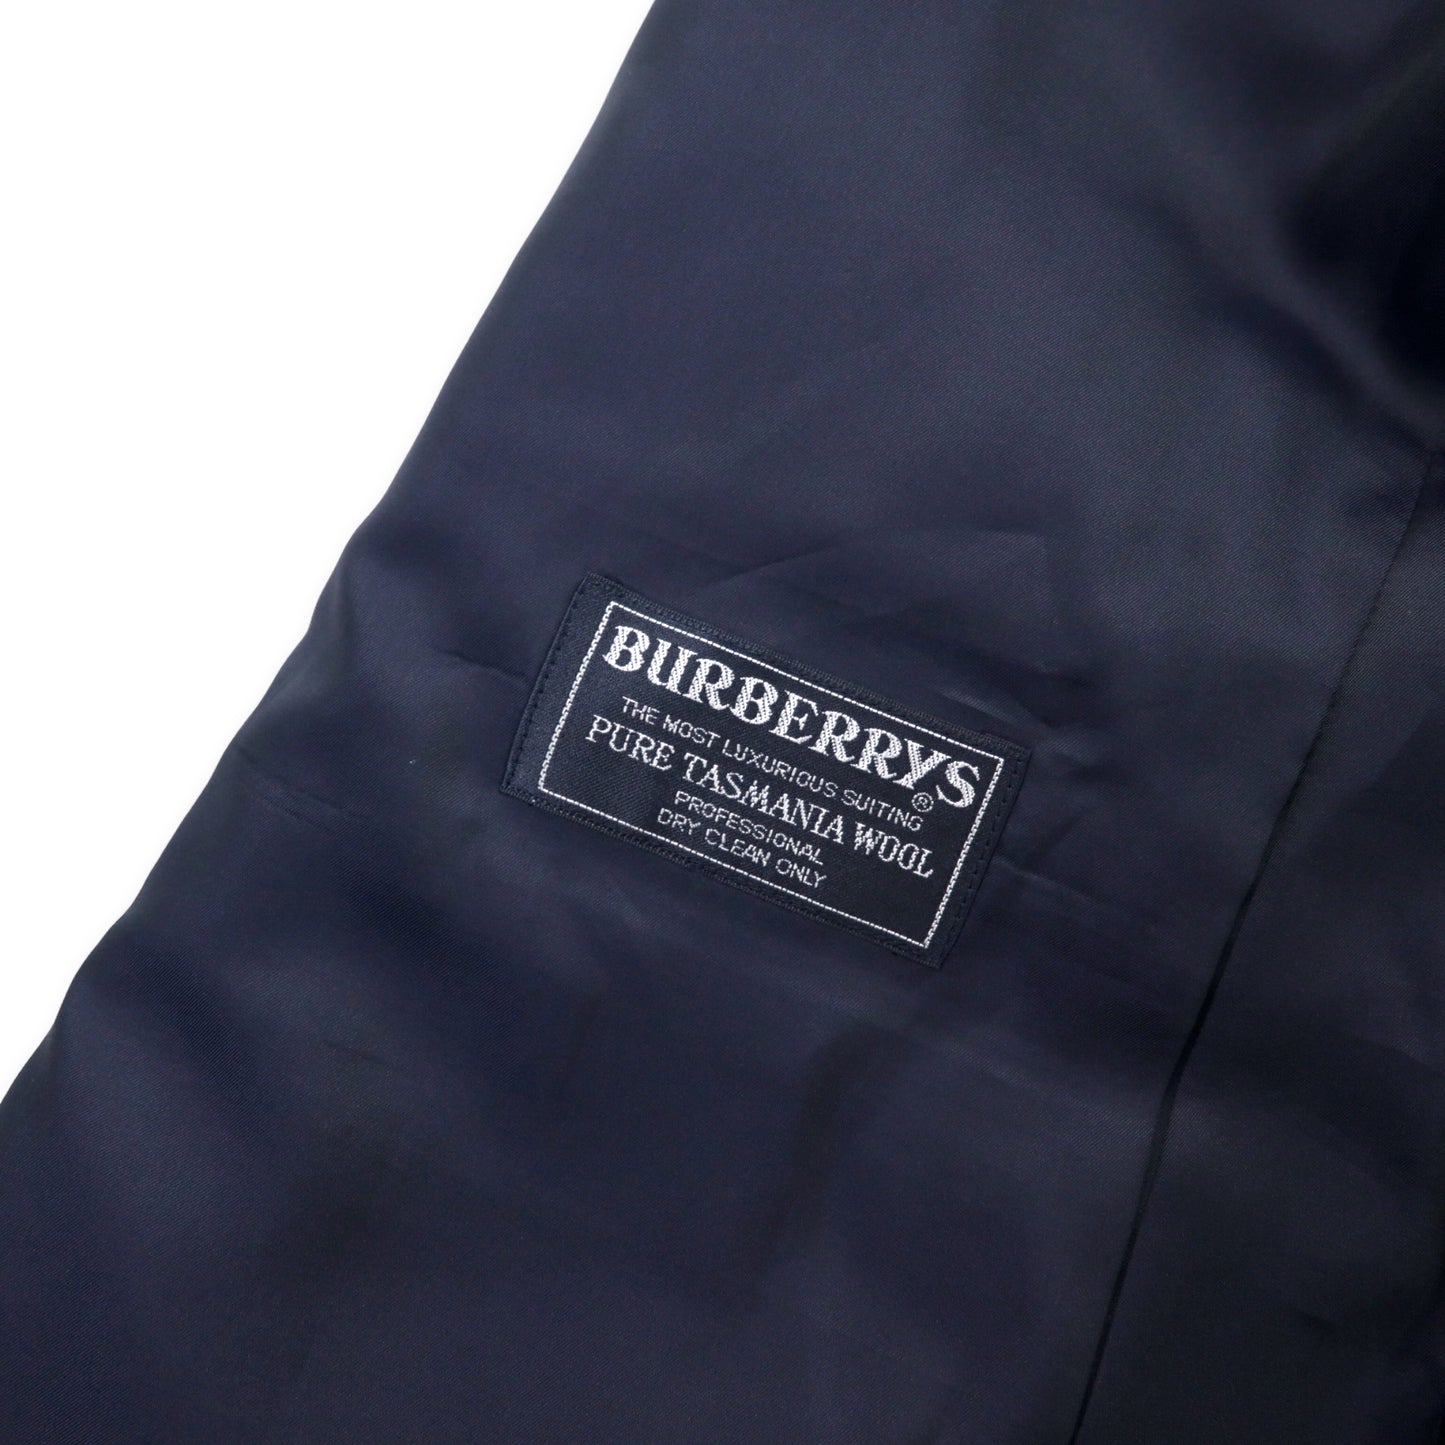 Burberrys ダブル スーツ セットアップ 96-86-170 AB5 ネイビー ストライプ ウール 羊毛 オールド 日本製